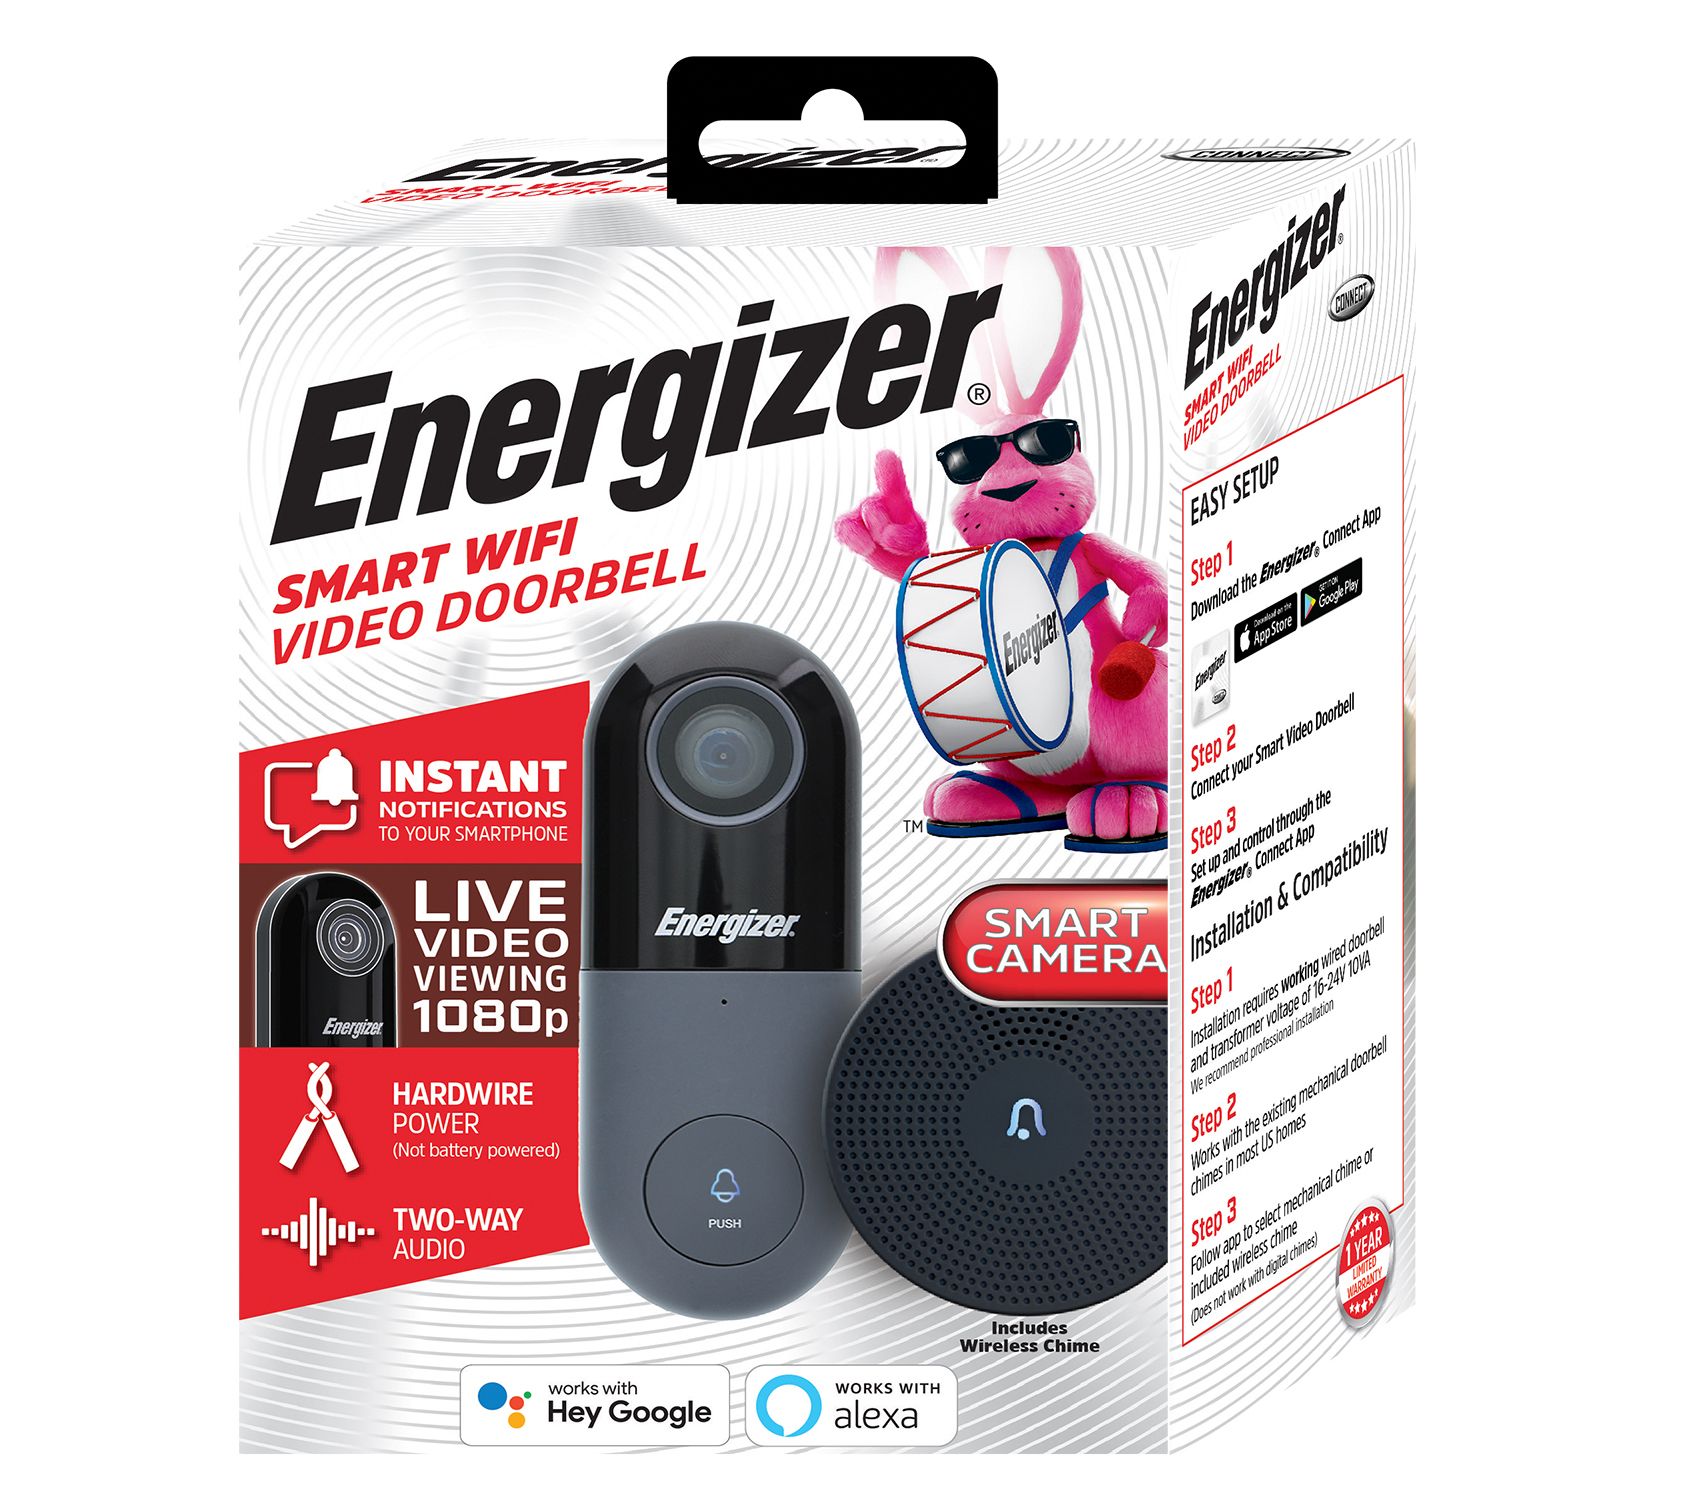 Smart Wifi 1080p Video Doorbell - Energizer